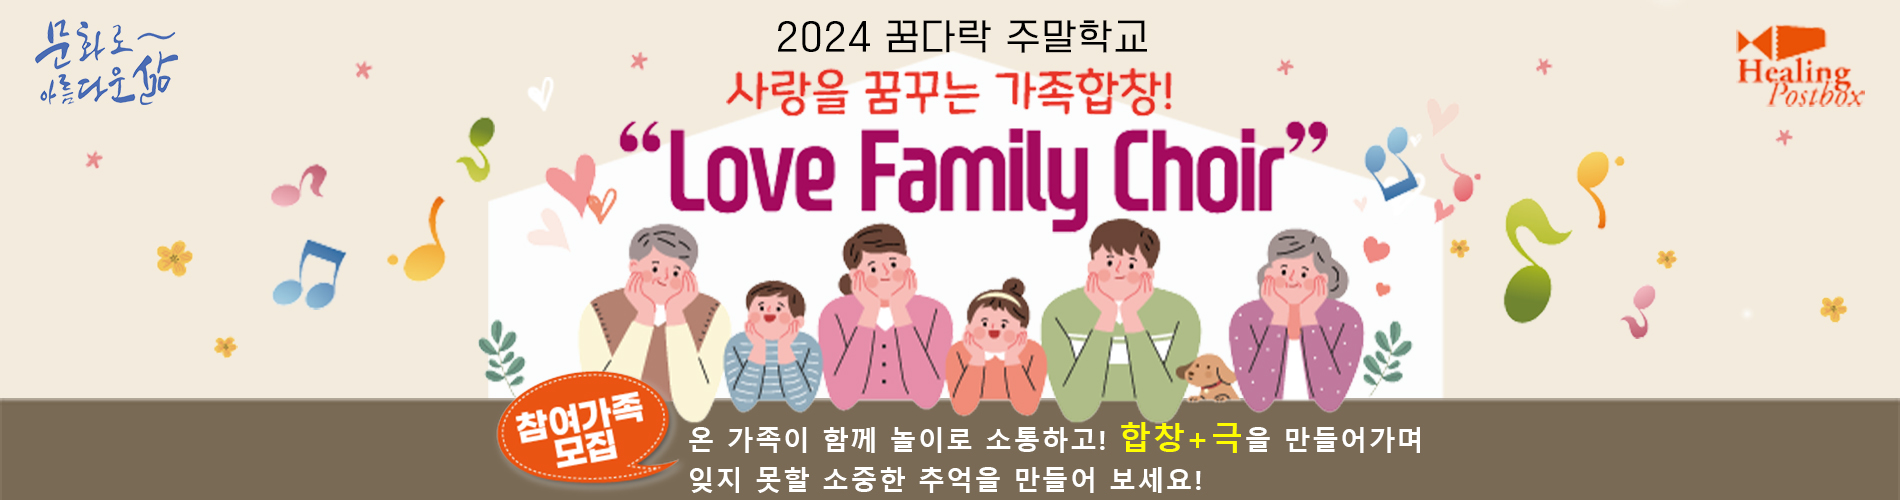 _사랑을 꿈꾸는 가족합창 Love Family Choir.jpg